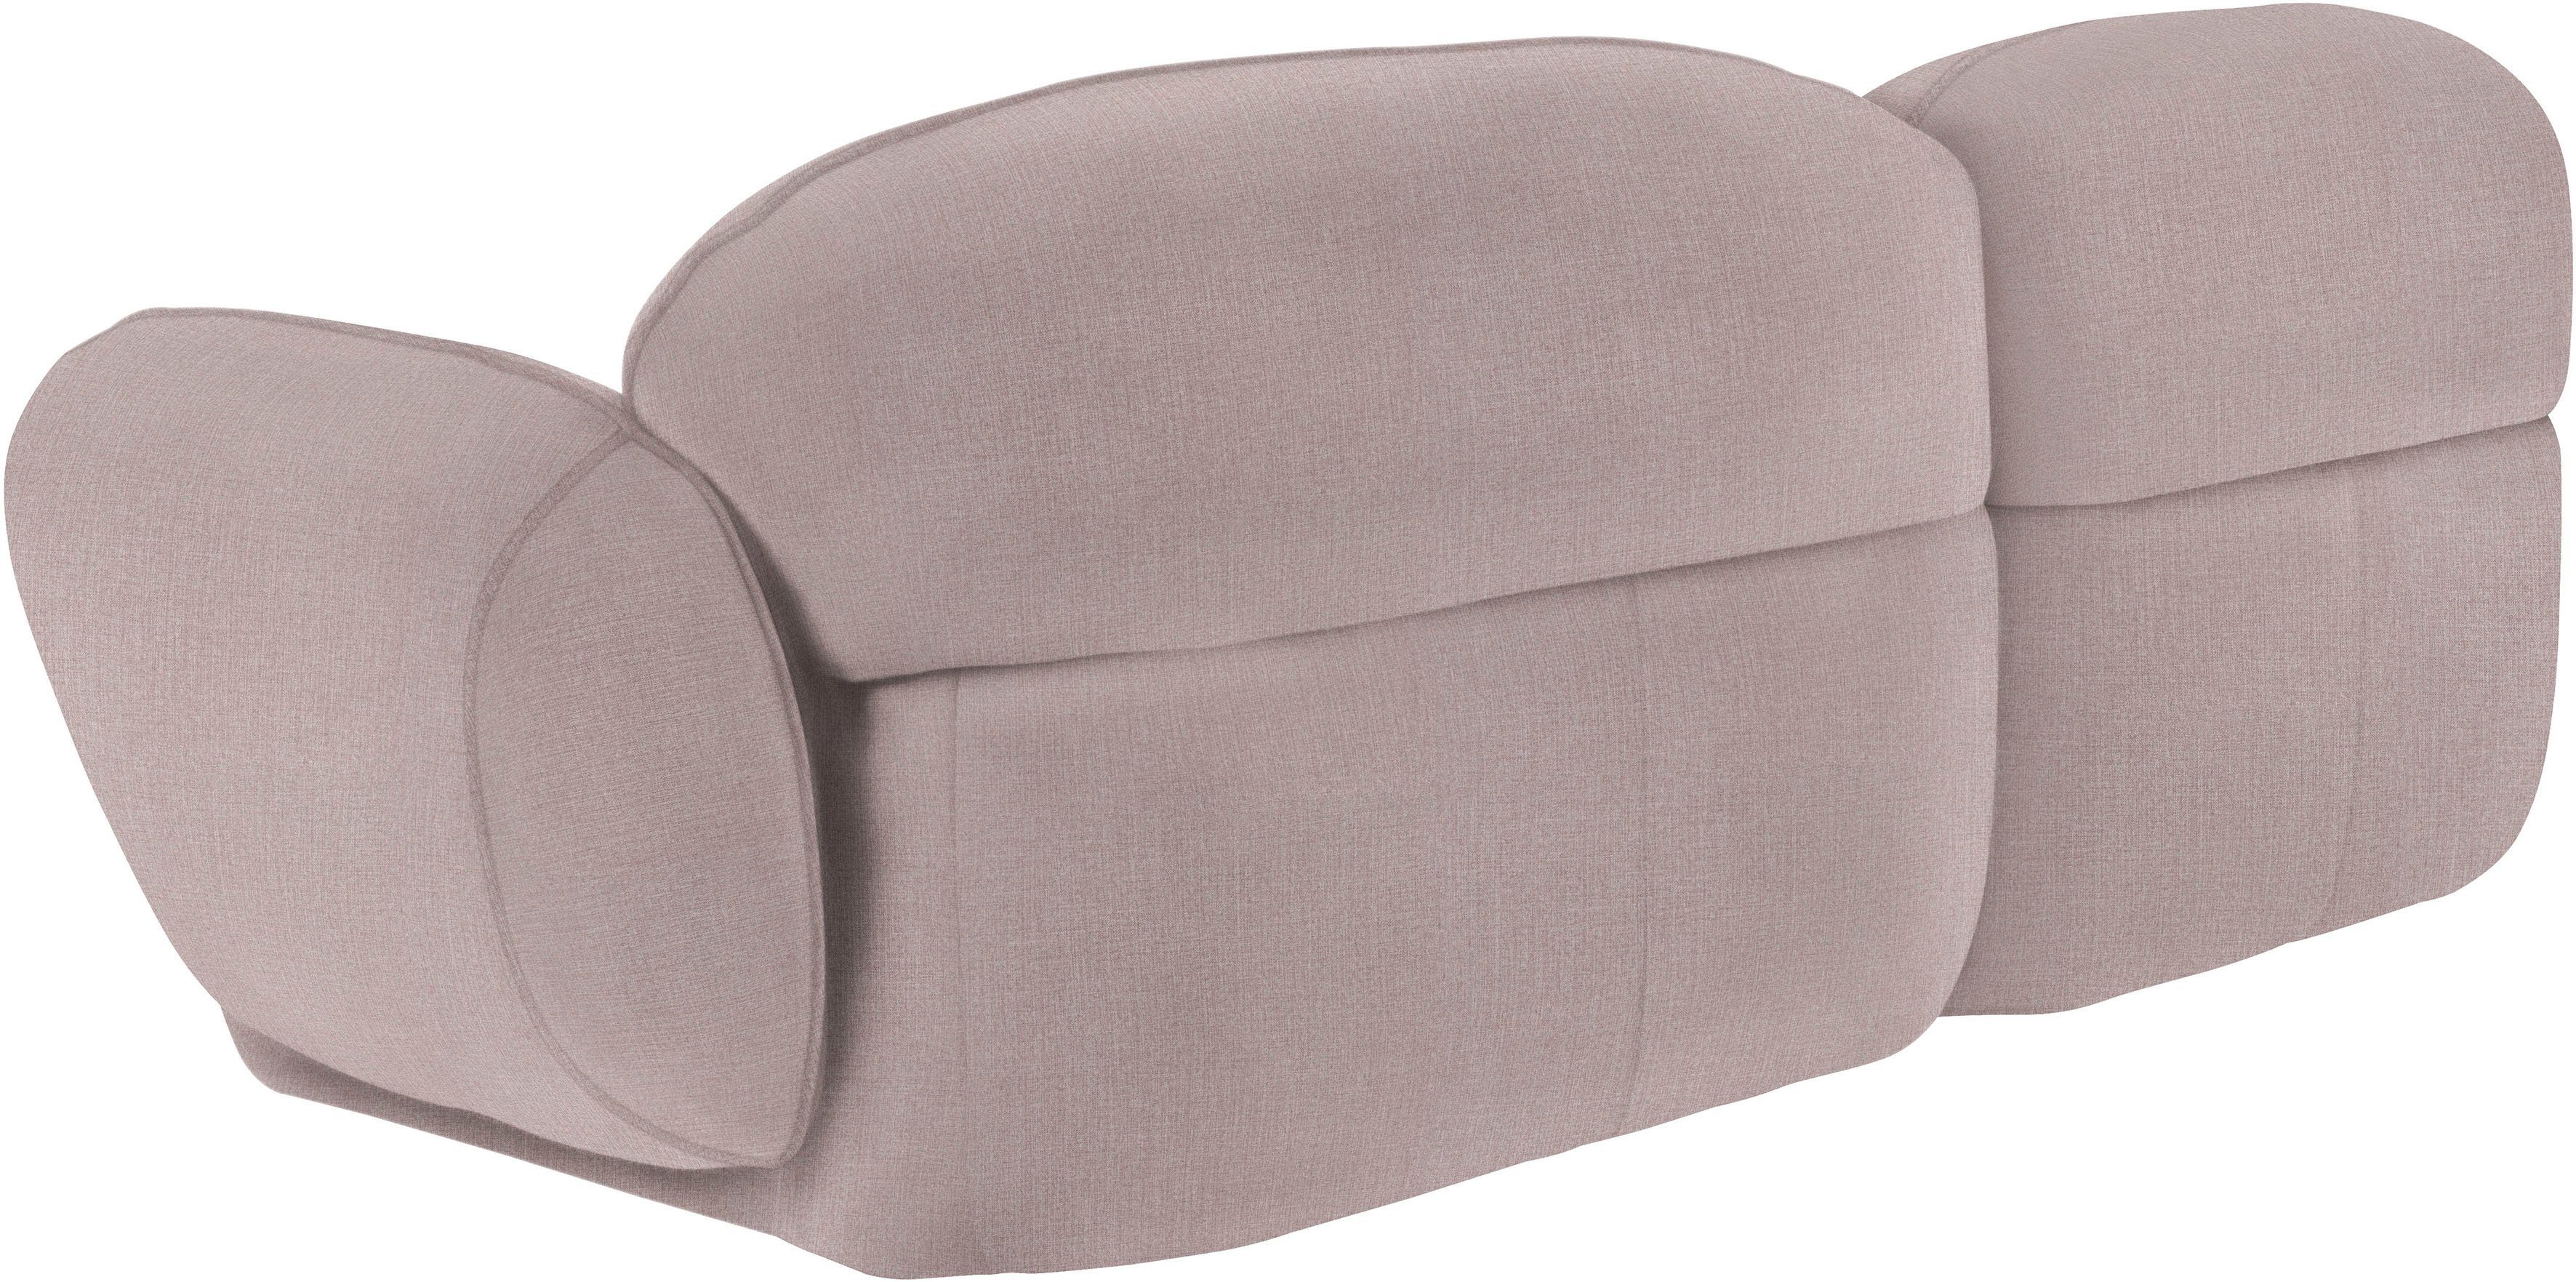 Design komfortabel furninova 2,5-Sitzer Memoryschaum, Bubble, skandinavischen durch im